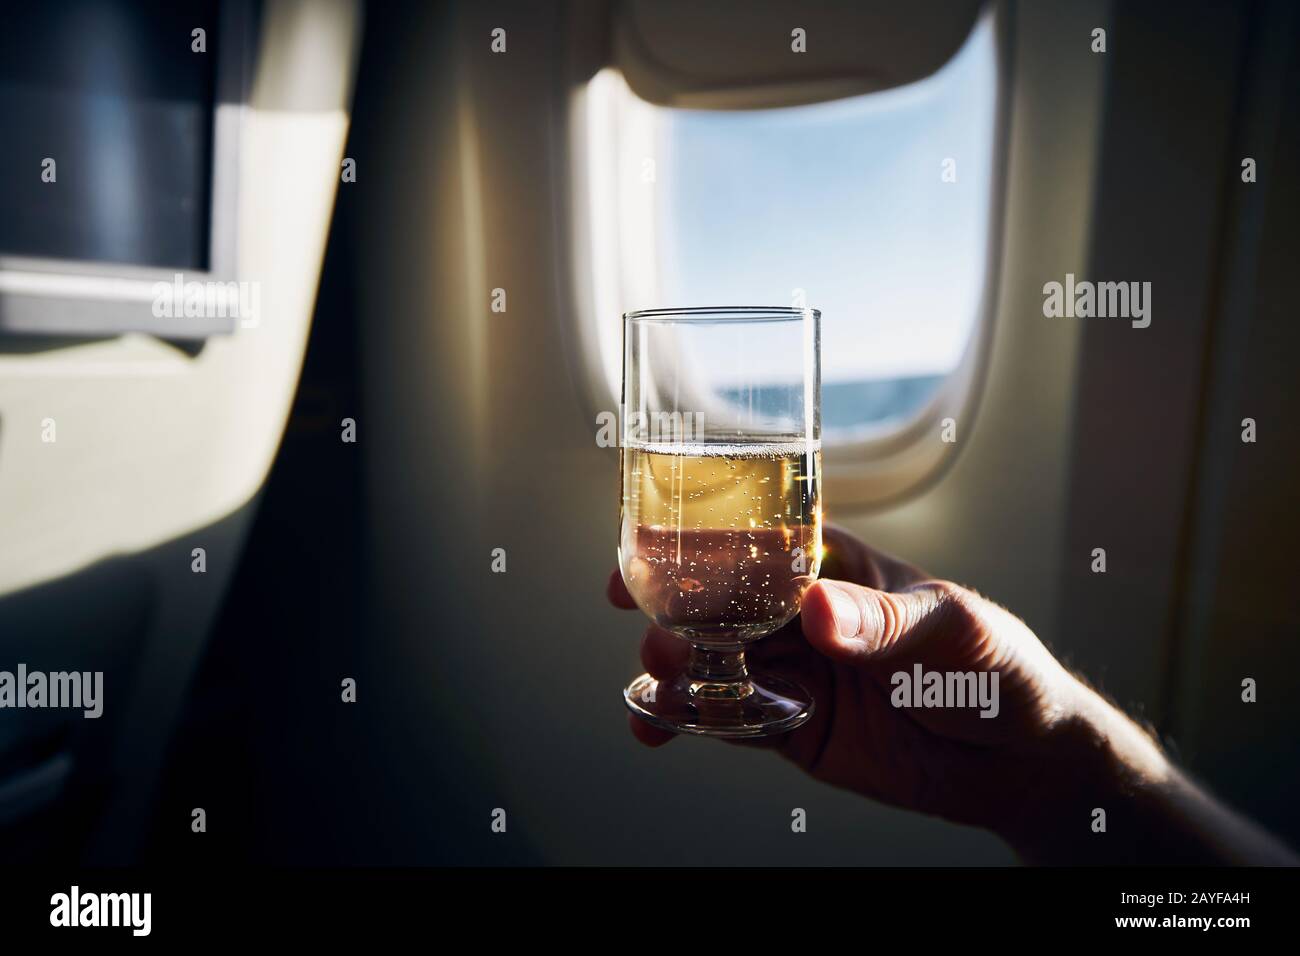 Bearing durante el vuelo. Hombre sosteniendo una copa de vino espumoso contra la ventana del avión. Foto de stock